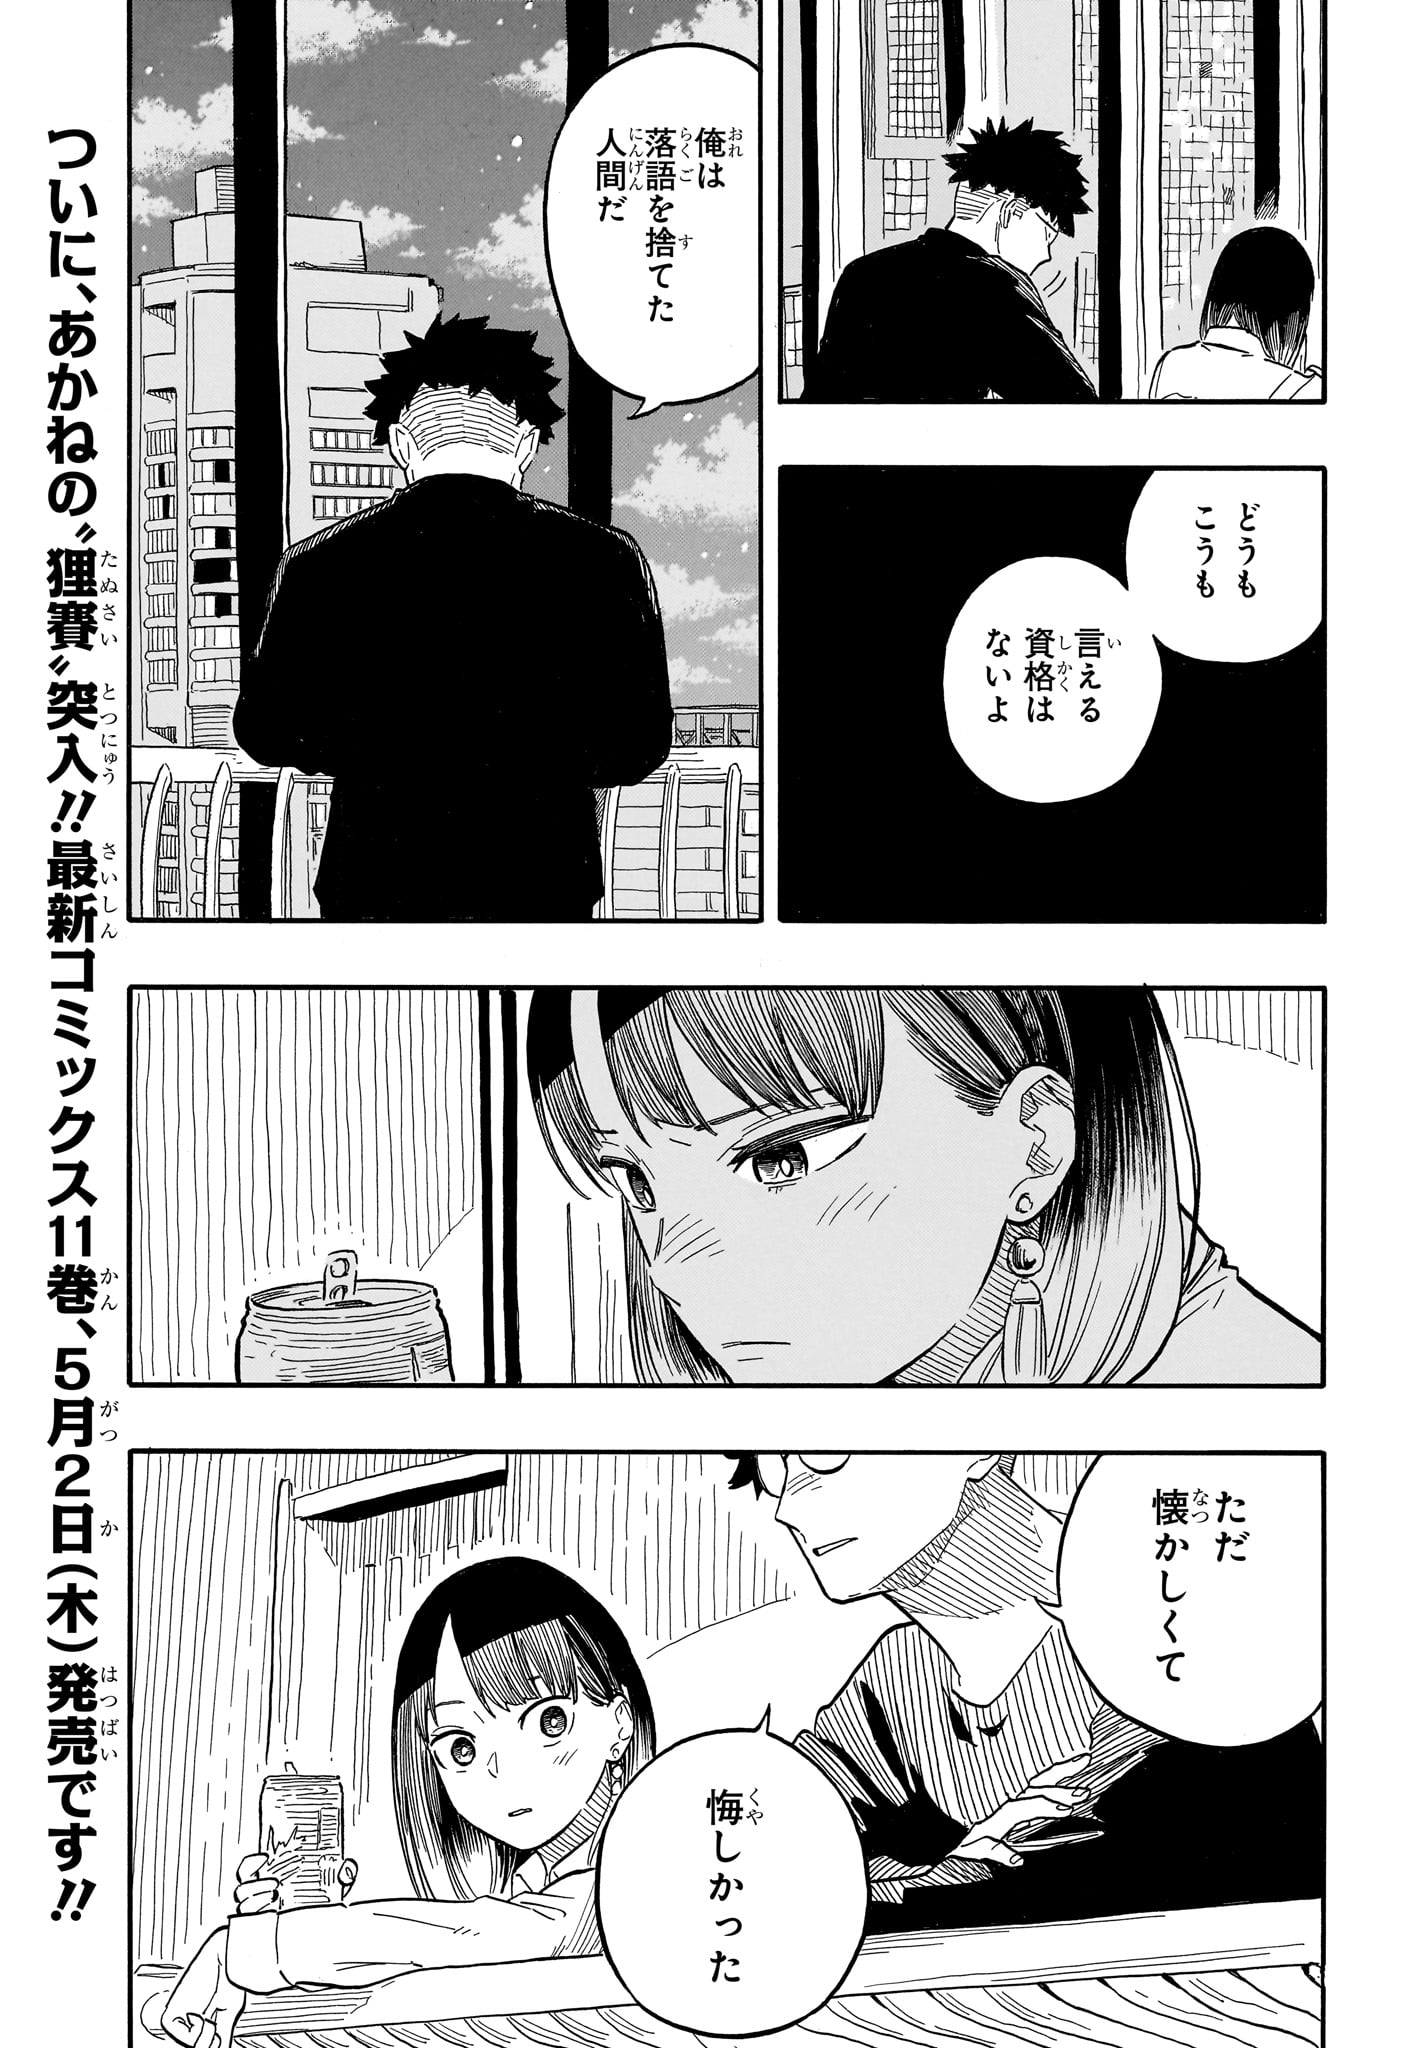 Akane-Banashi - Chapter 107 - Page 3